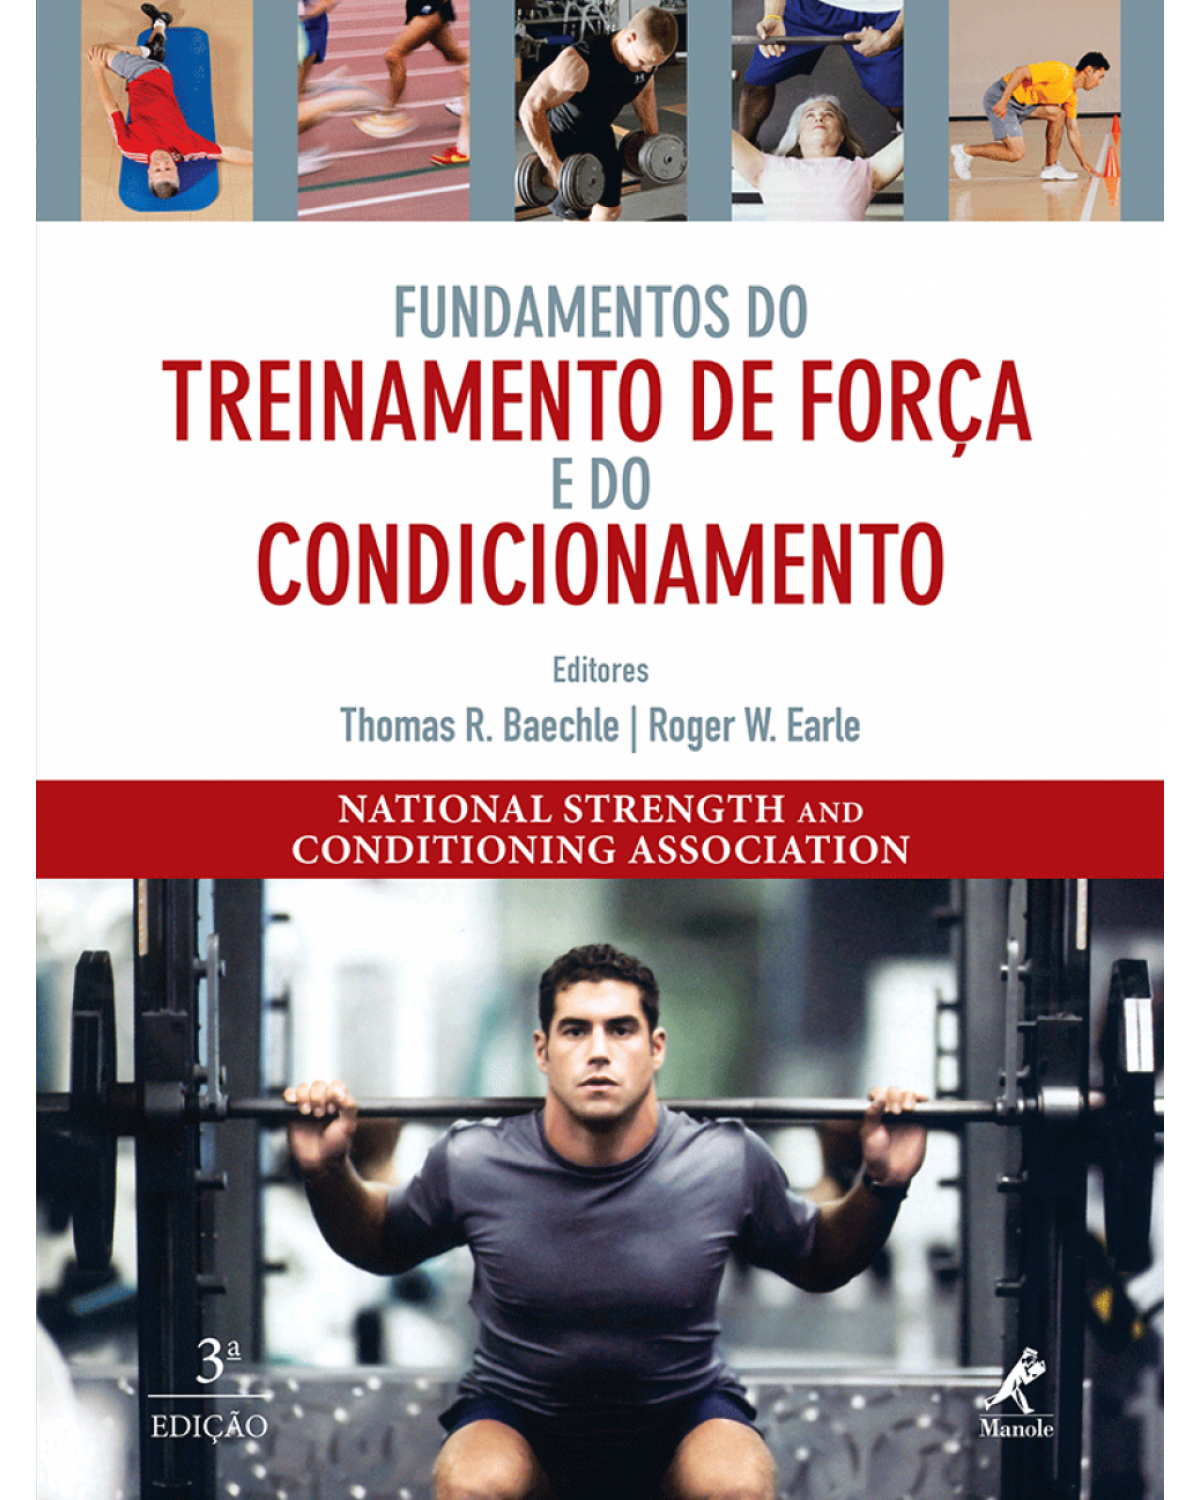 Fundamentos do treinamento de força e do condicionamento - 3ª Edição | 2010